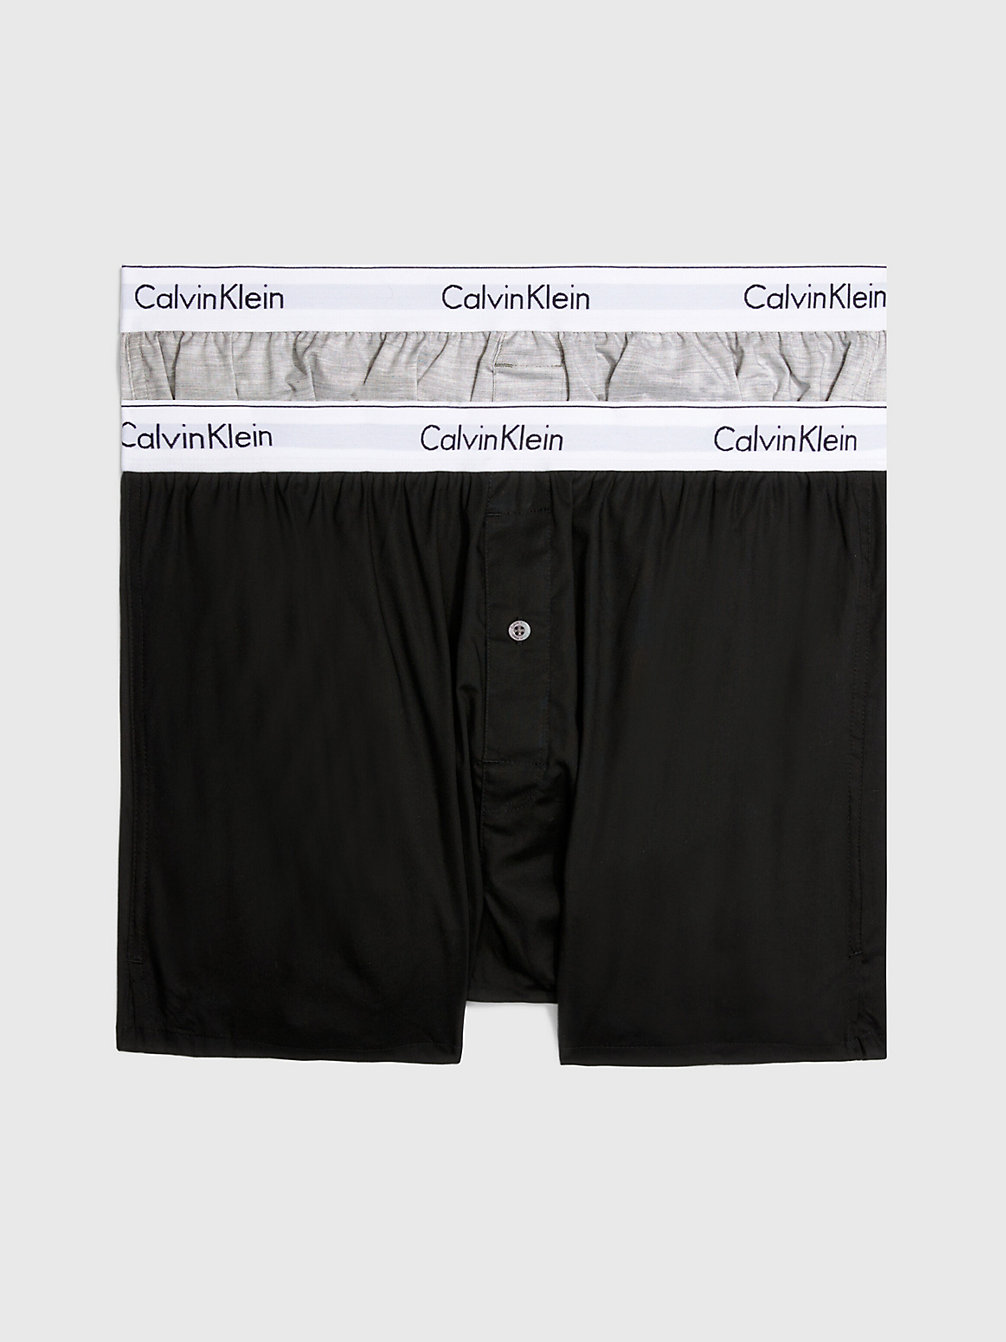 BLACK / GREY HEATHER > 2er-Pack Slim Fit Boxershorts - Modern Cotton > undefined Herren - Calvin Klein